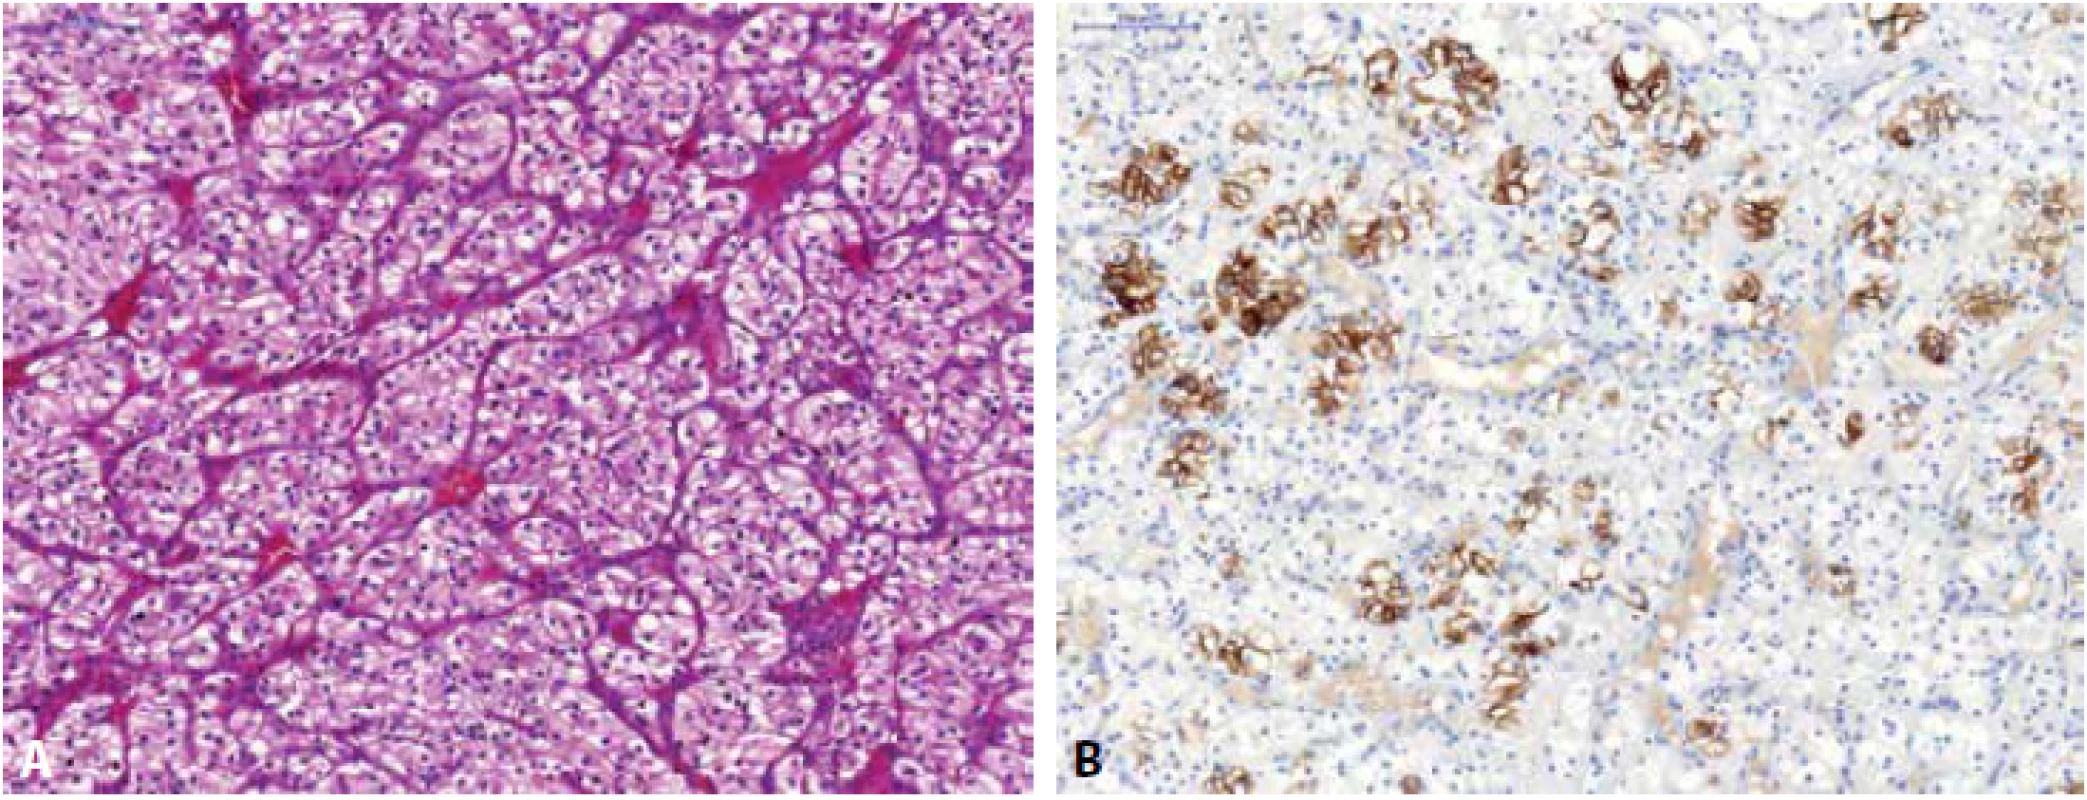 Low-grade světlobuněčný renální karcinom (A), fokálně vykazující pozitivitu barvení s cytokeratinem CK7 (B).